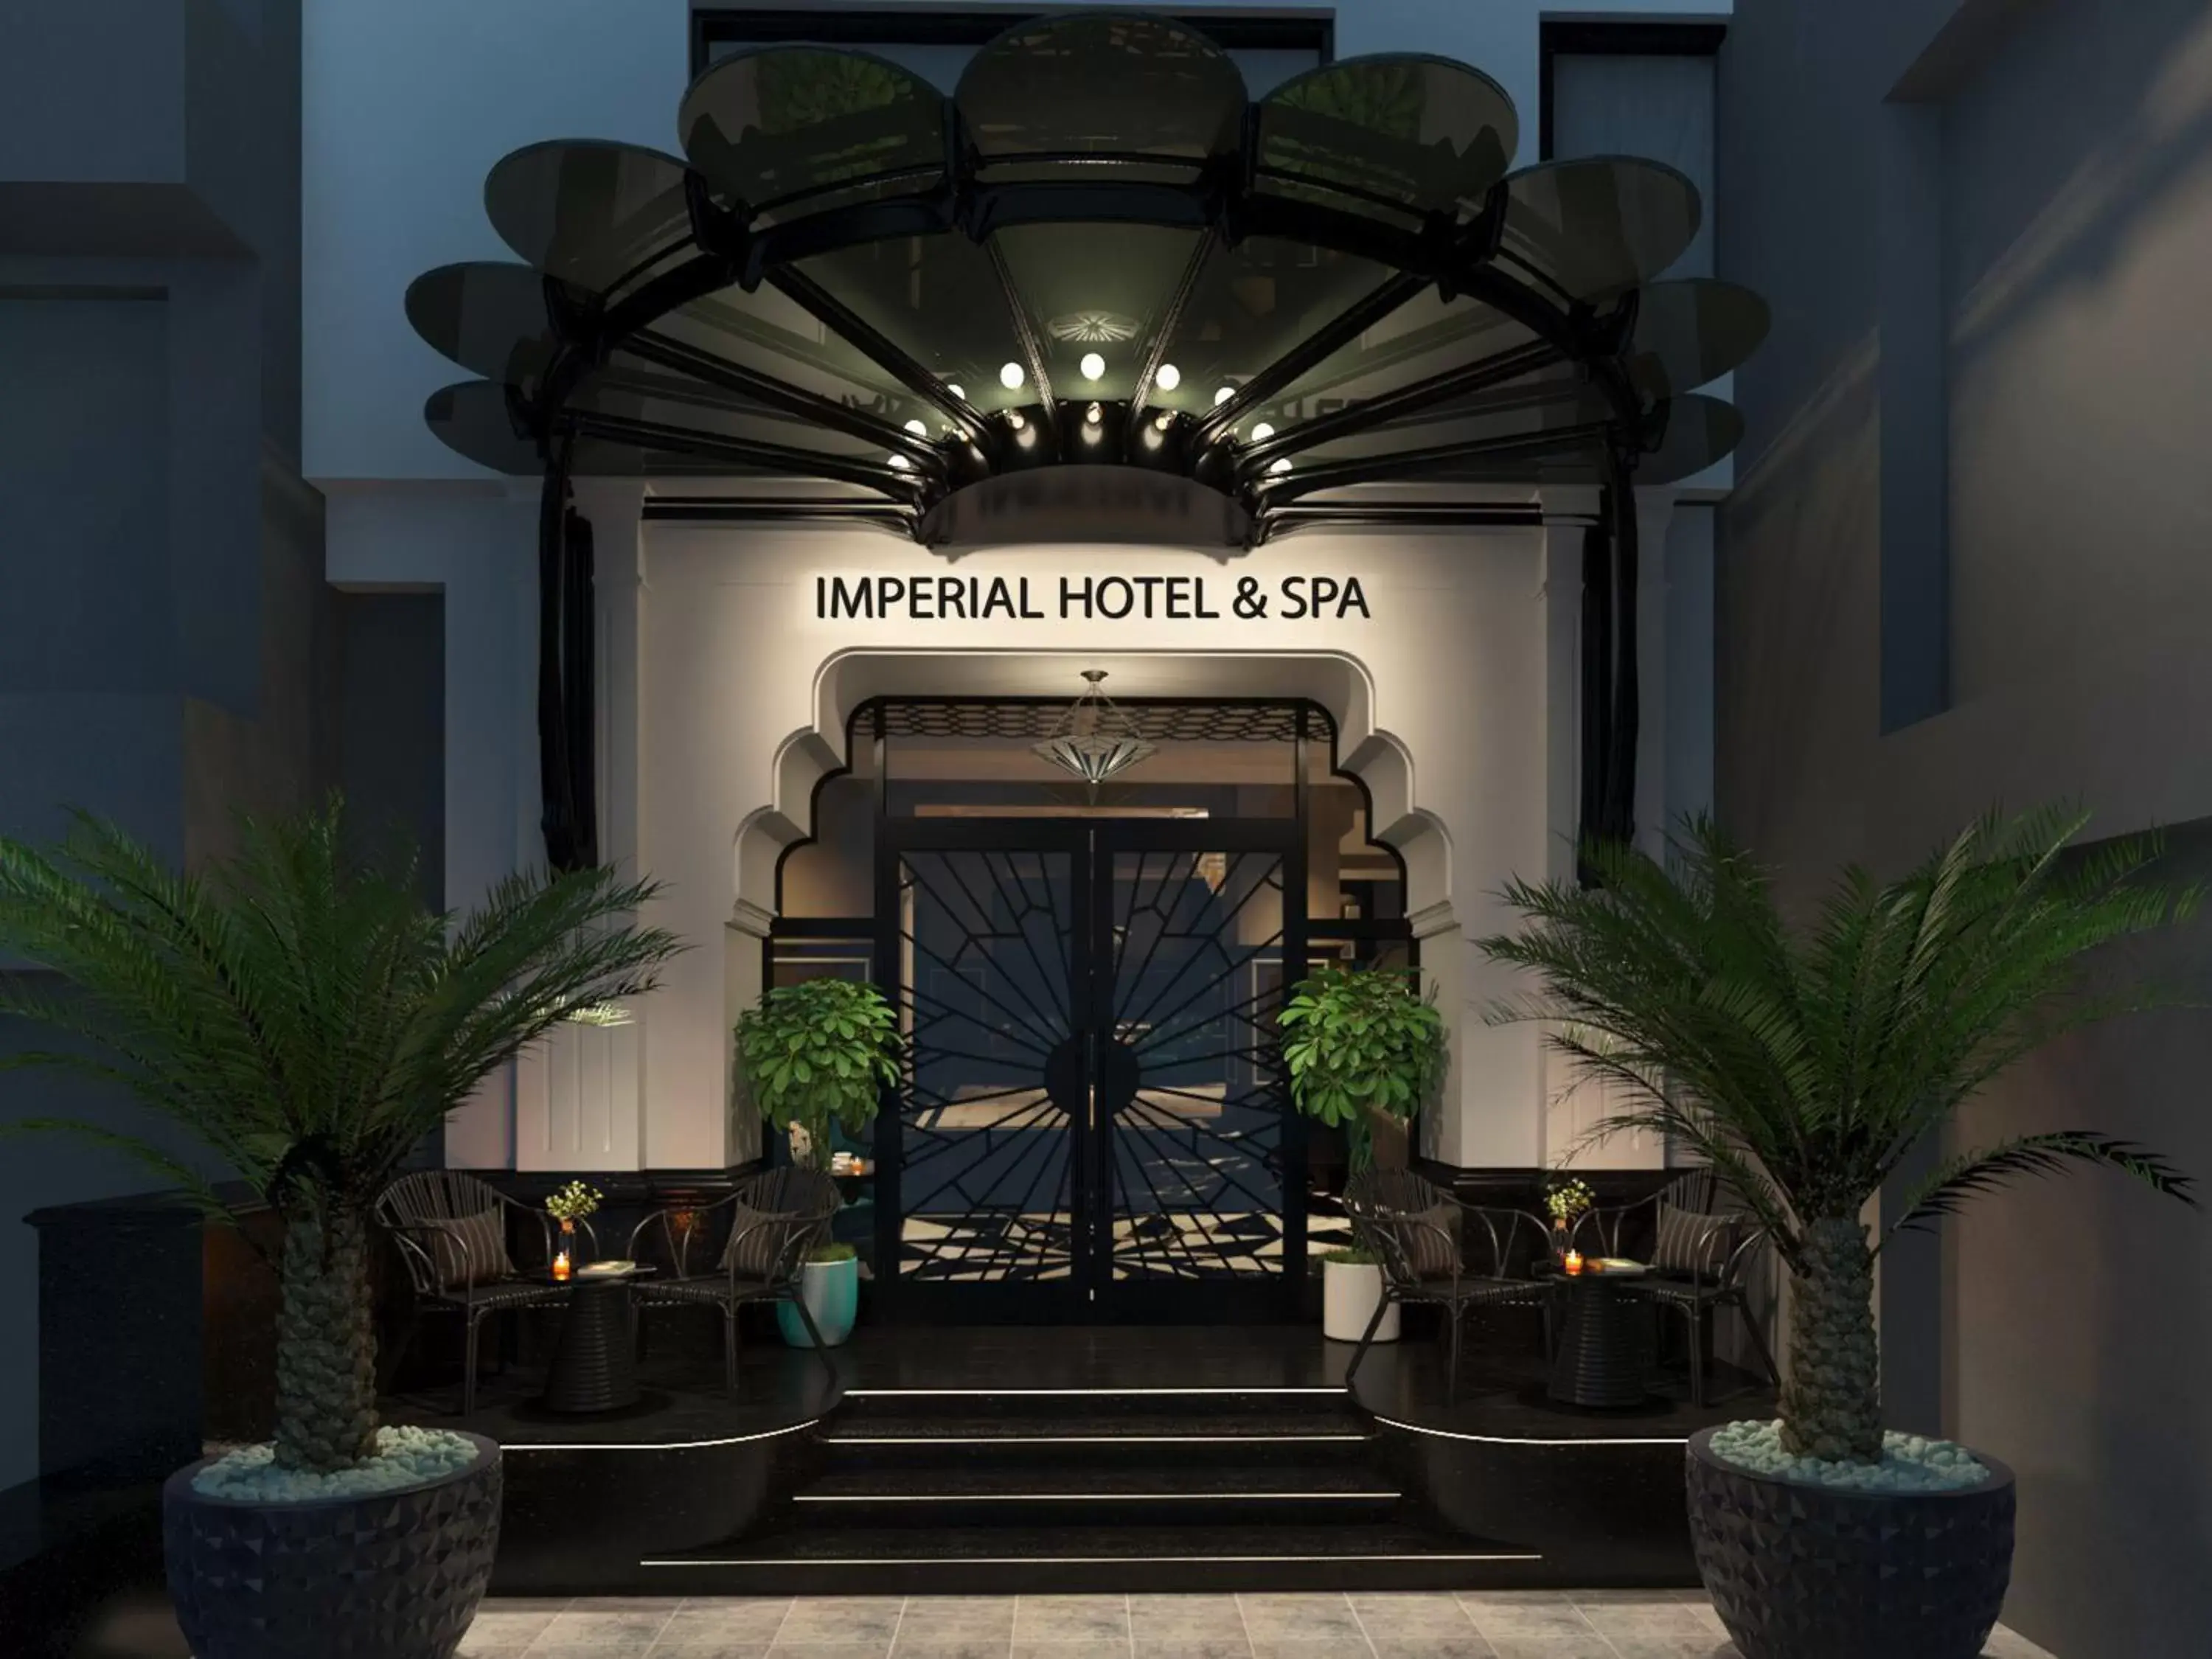 Facade/entrance in Imperial Hotel & Spa